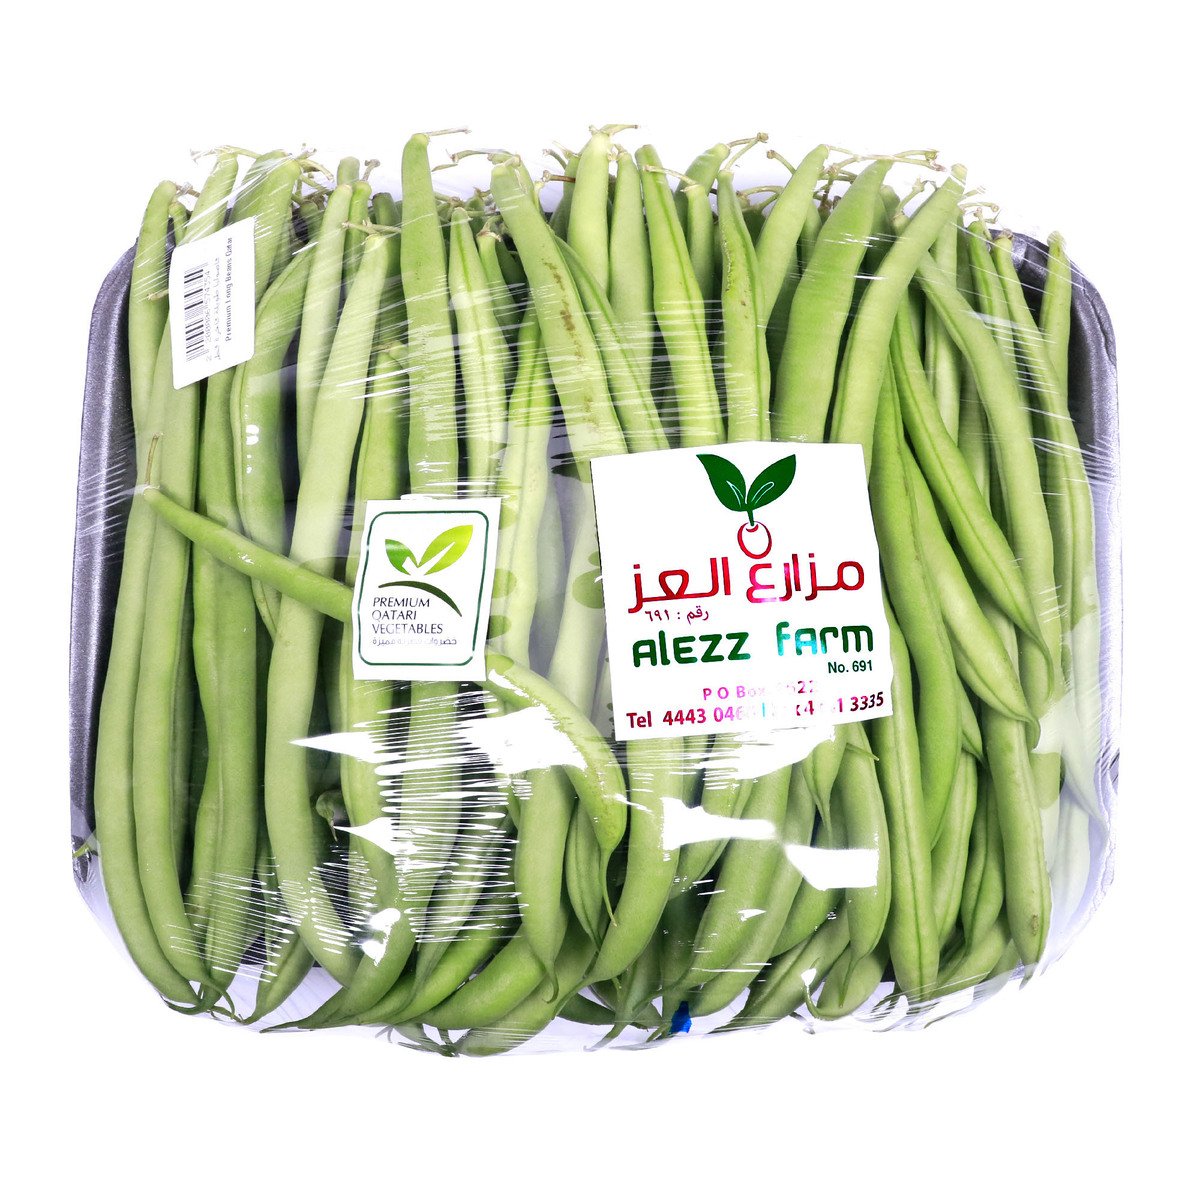 Premium Long Beans Qatar 1kg